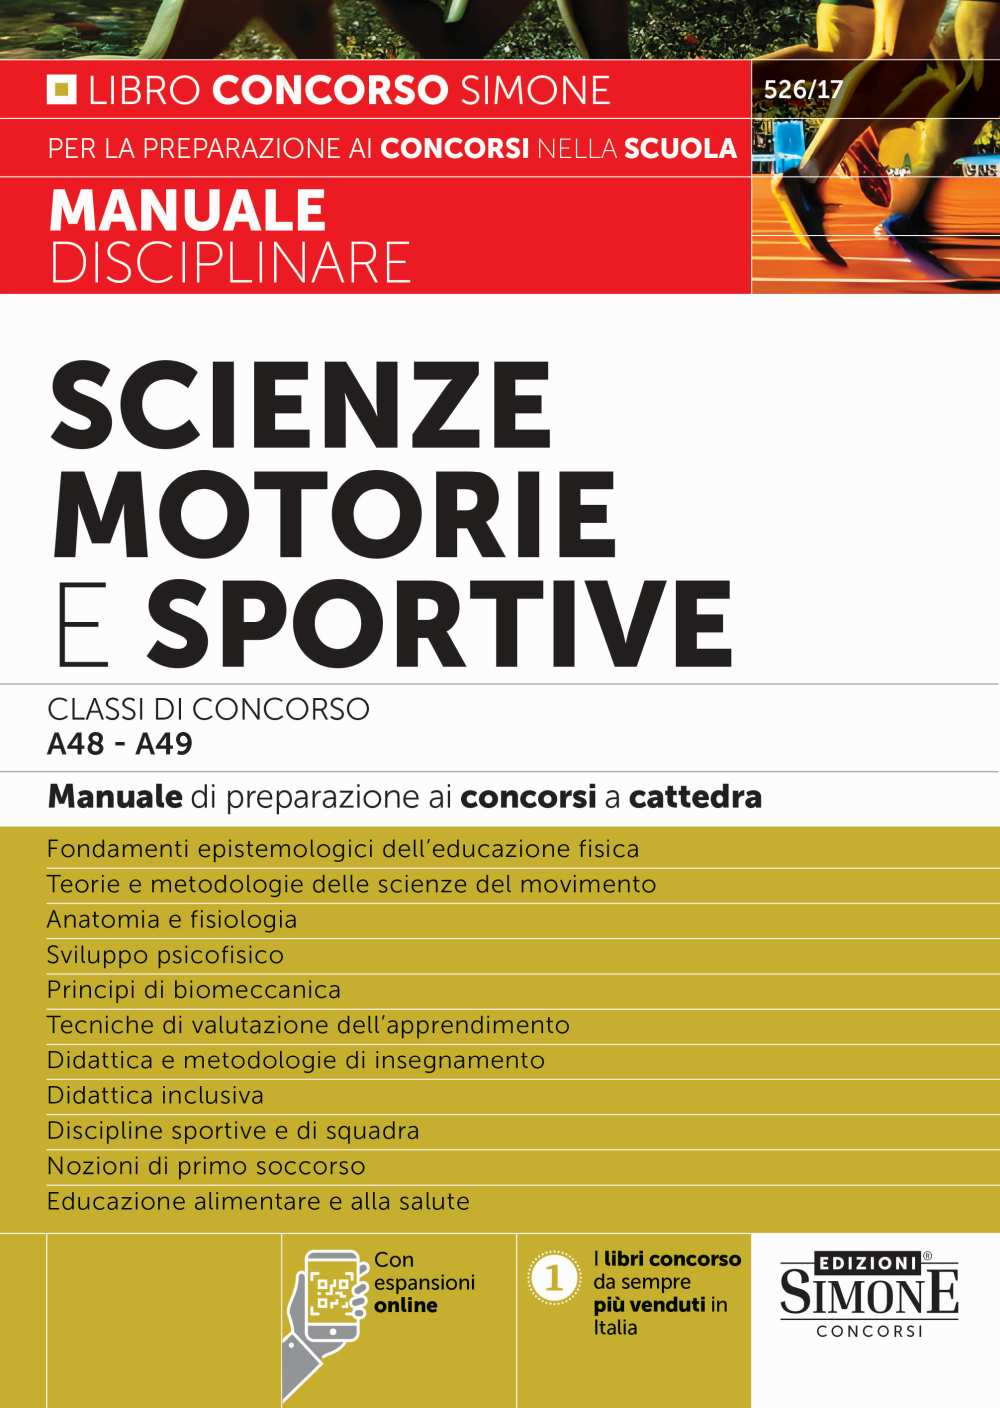 Scienze motorie e sportive Classi di Concorso A48 - A49 - Manuale - 526/17